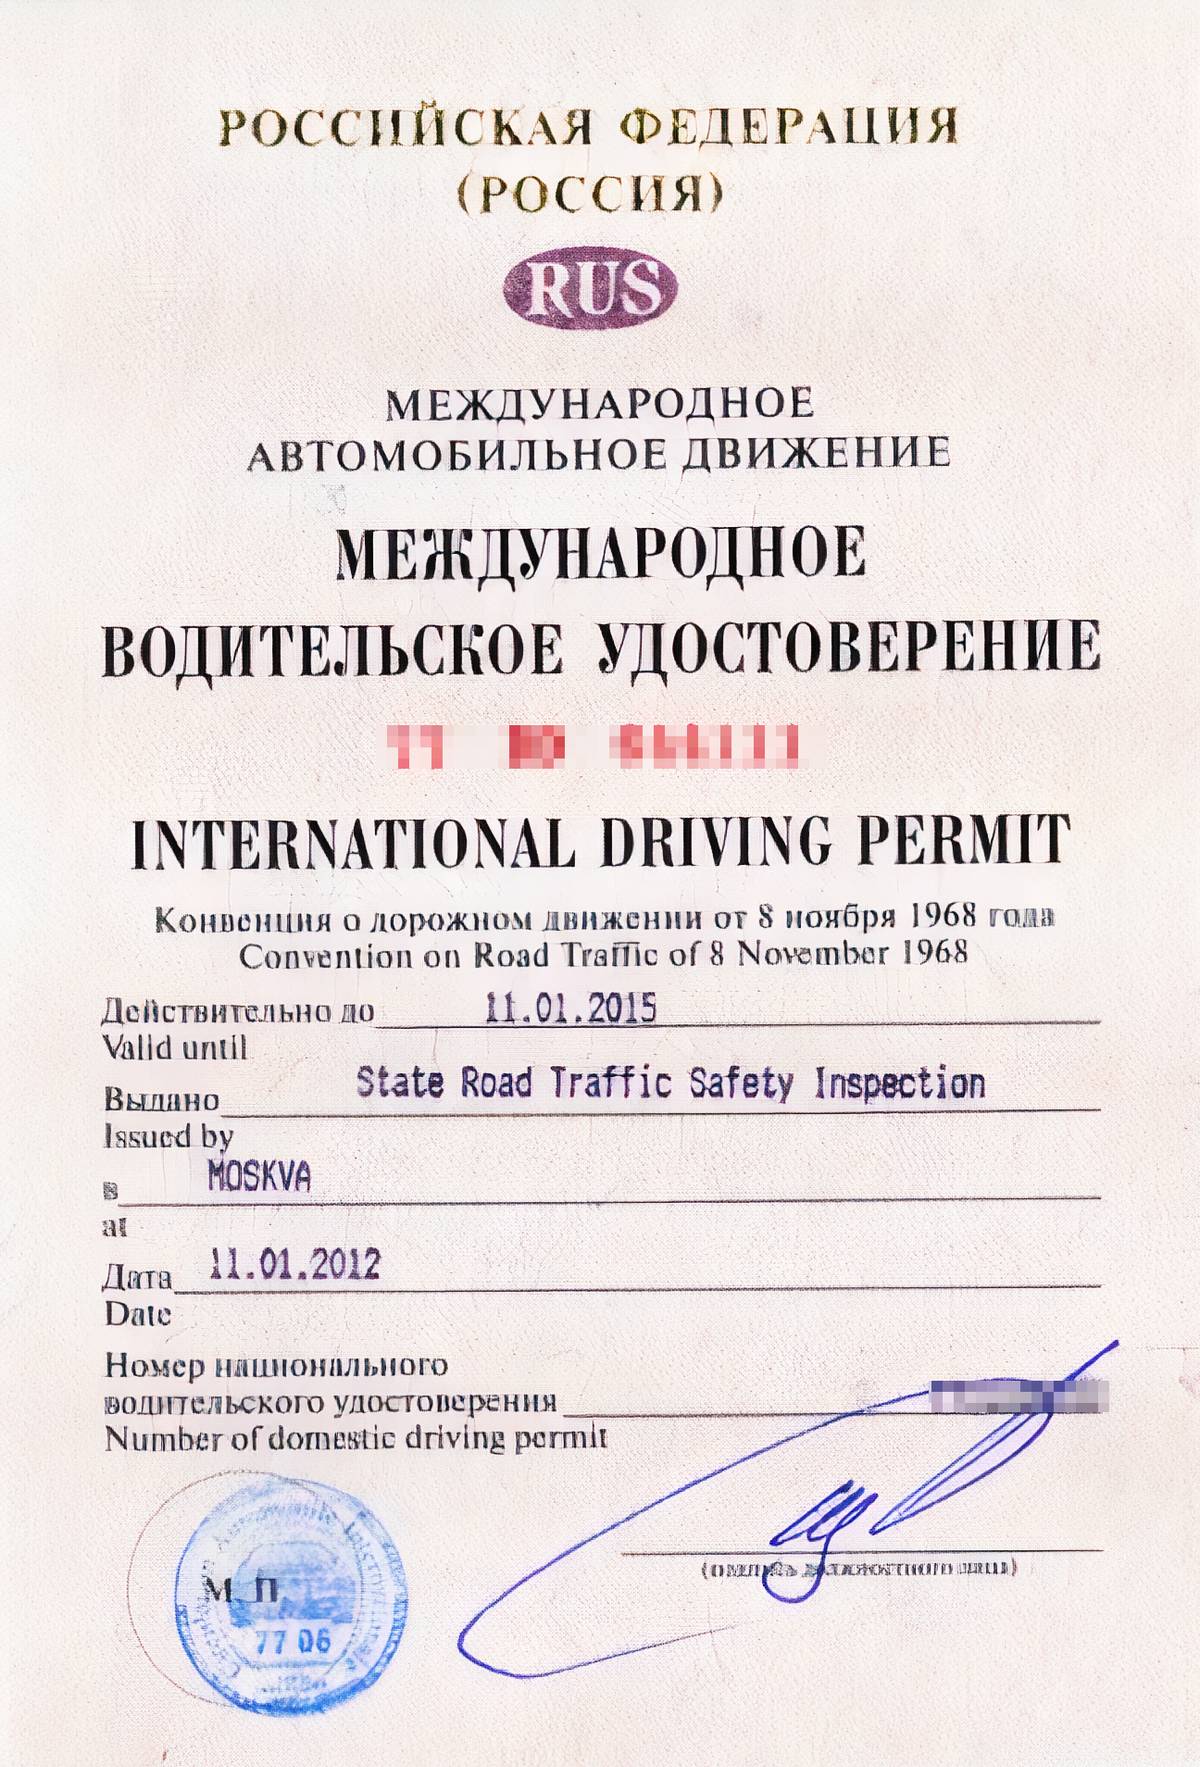 Международные водительские права РФ